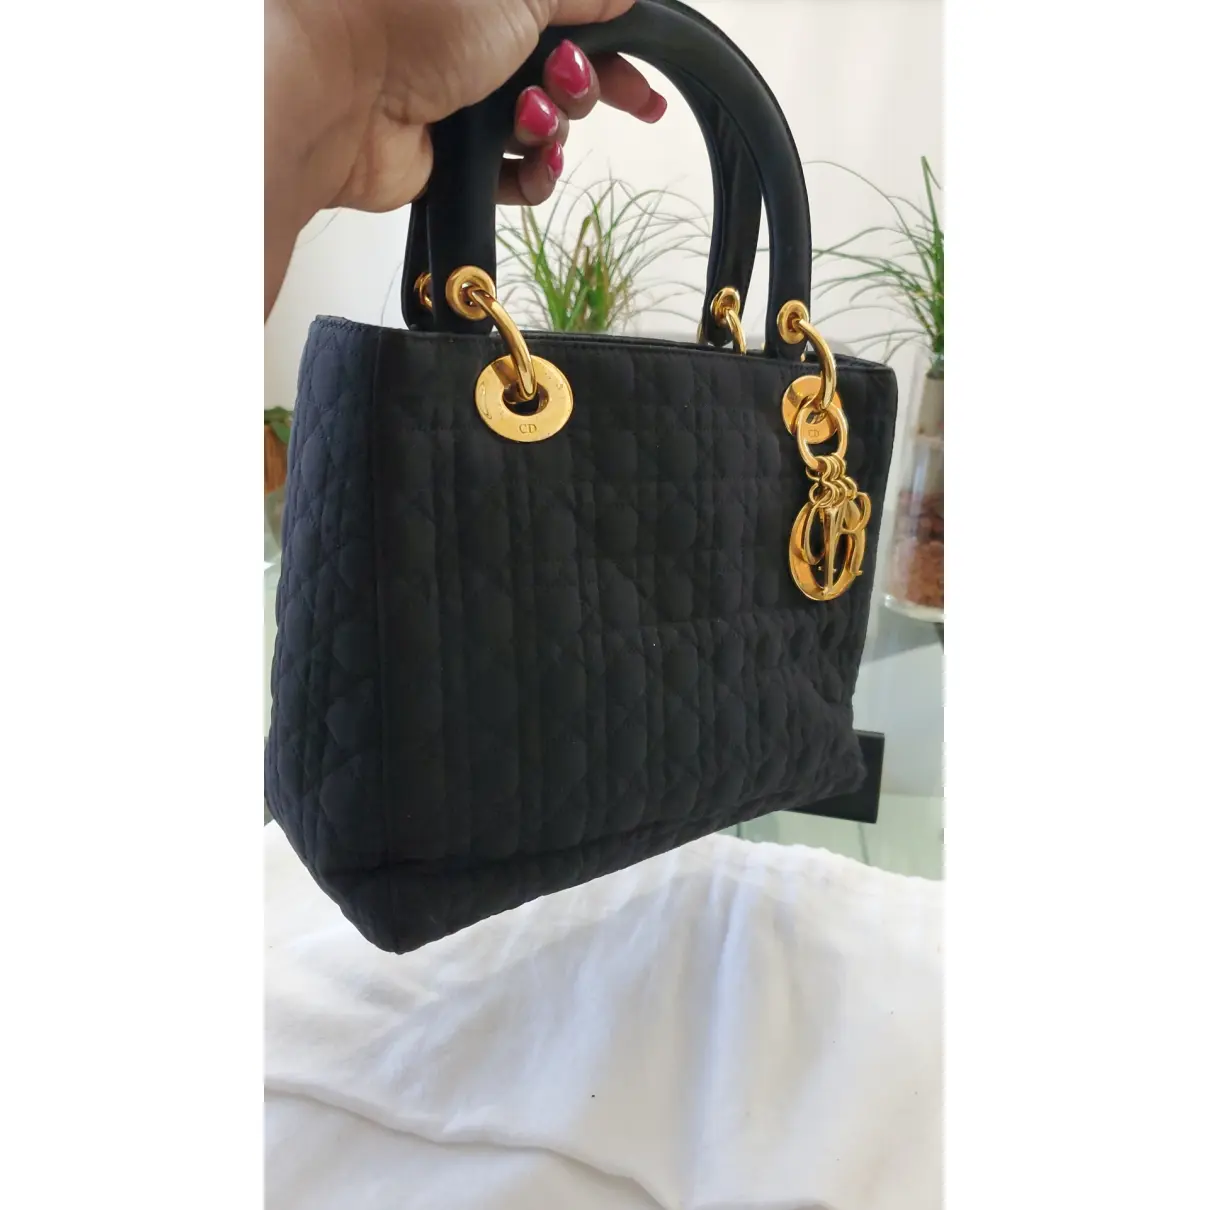 Buy Dior Lady Dior cloth handbag online